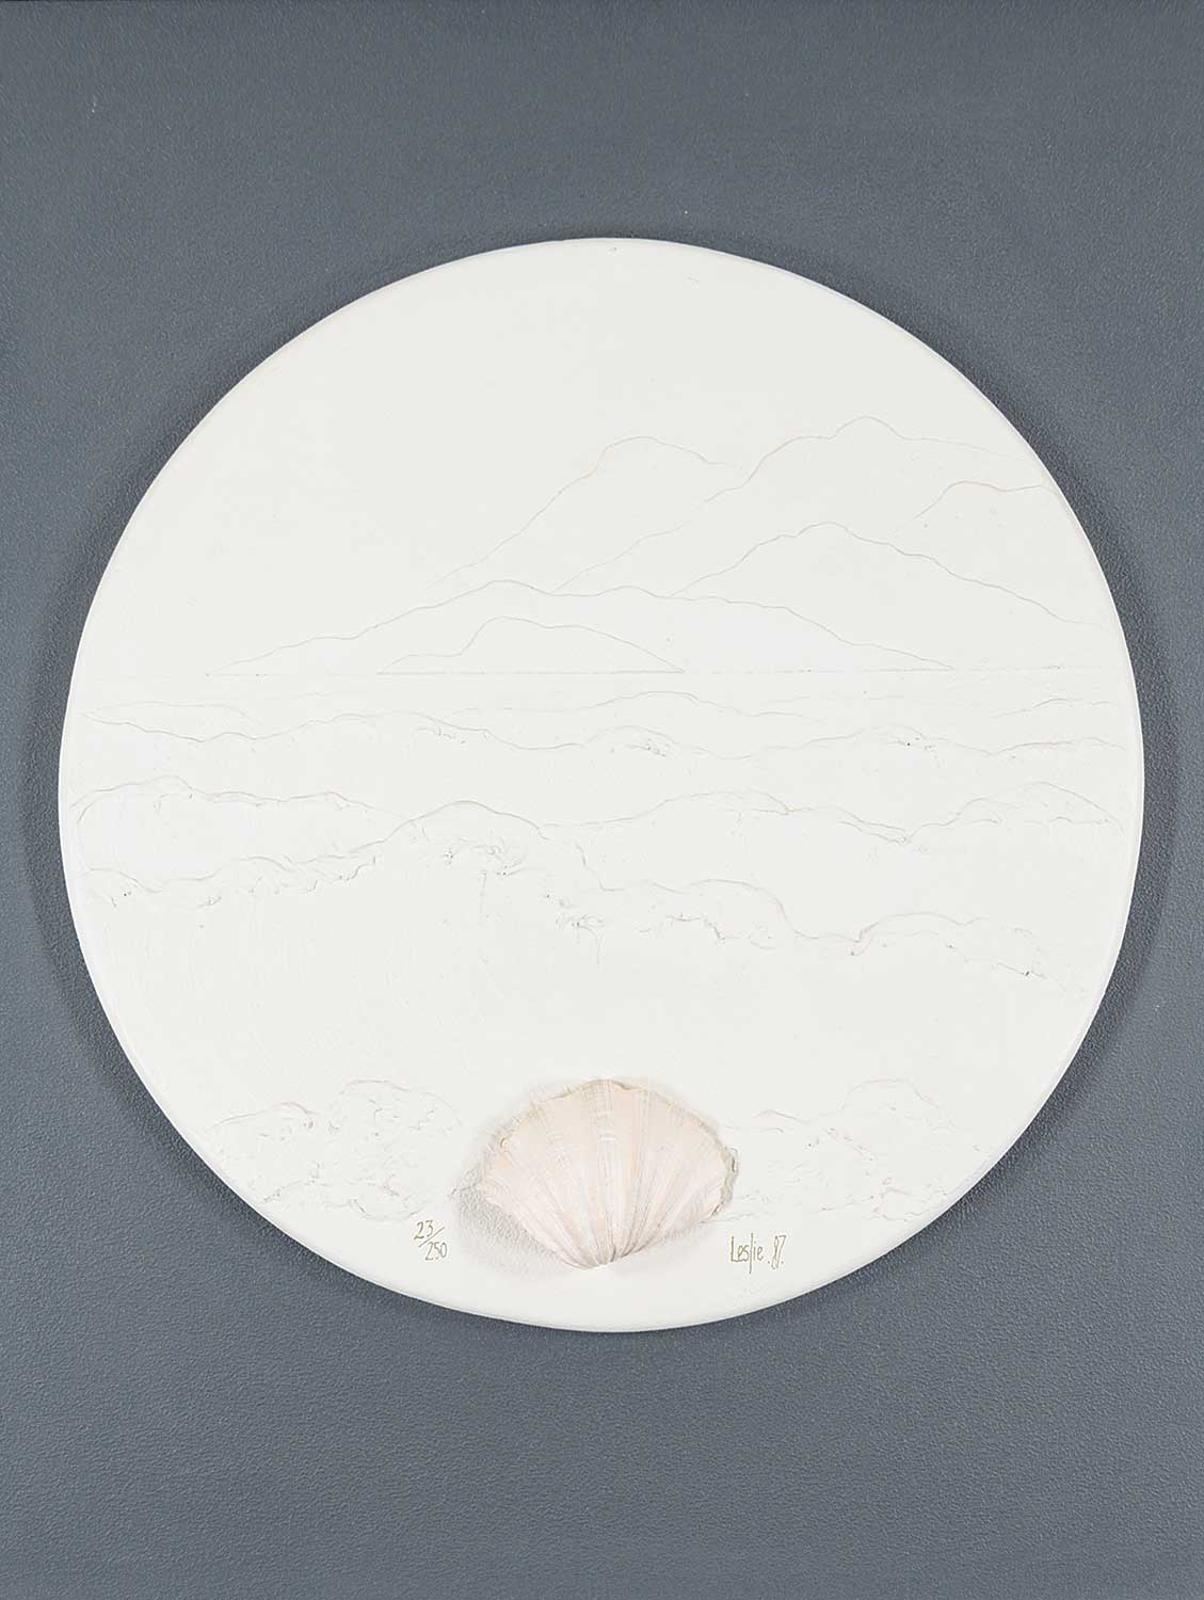 Leslie - Untitled - Sea Shell  #23/250